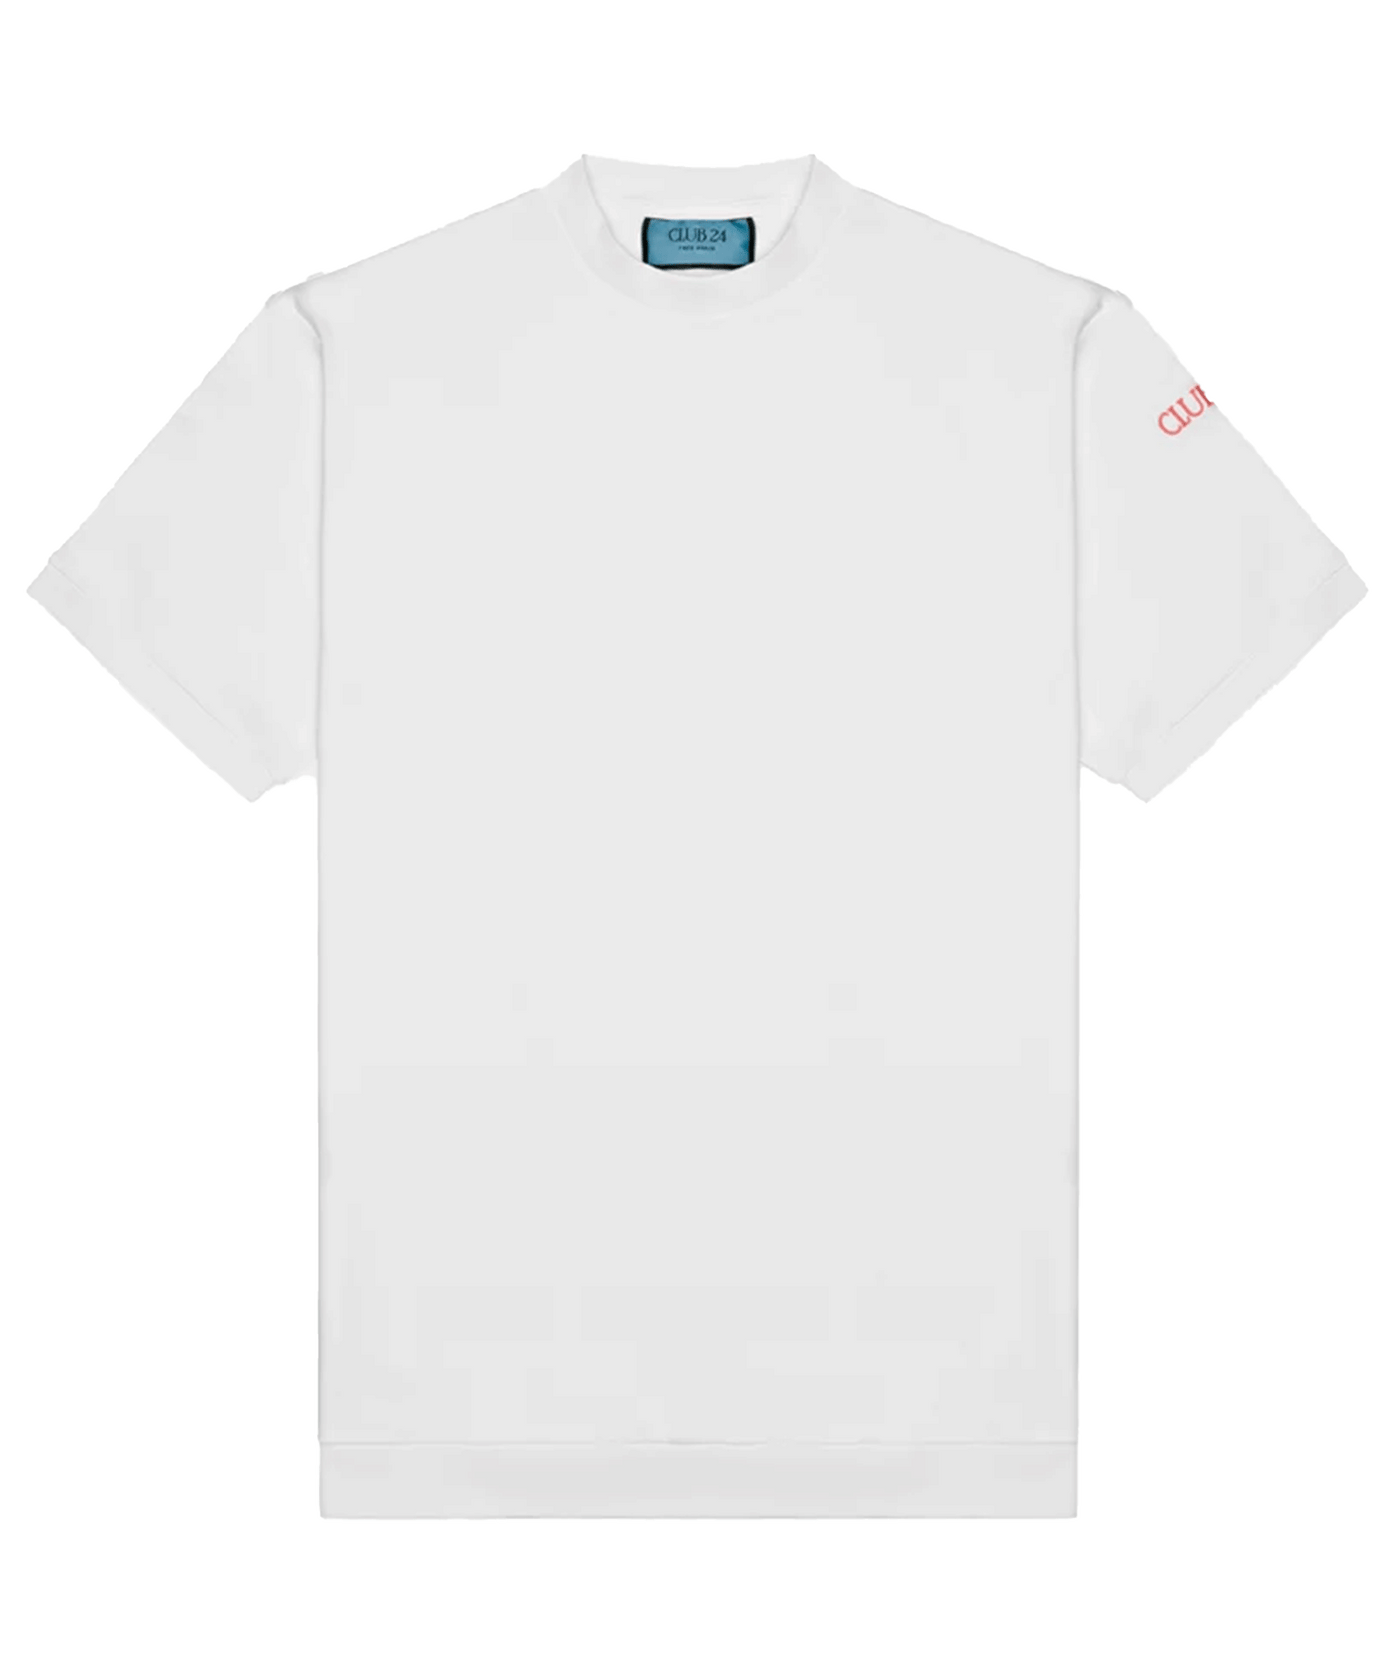 Club 24 - Freedom - T-shirt - Sensational White